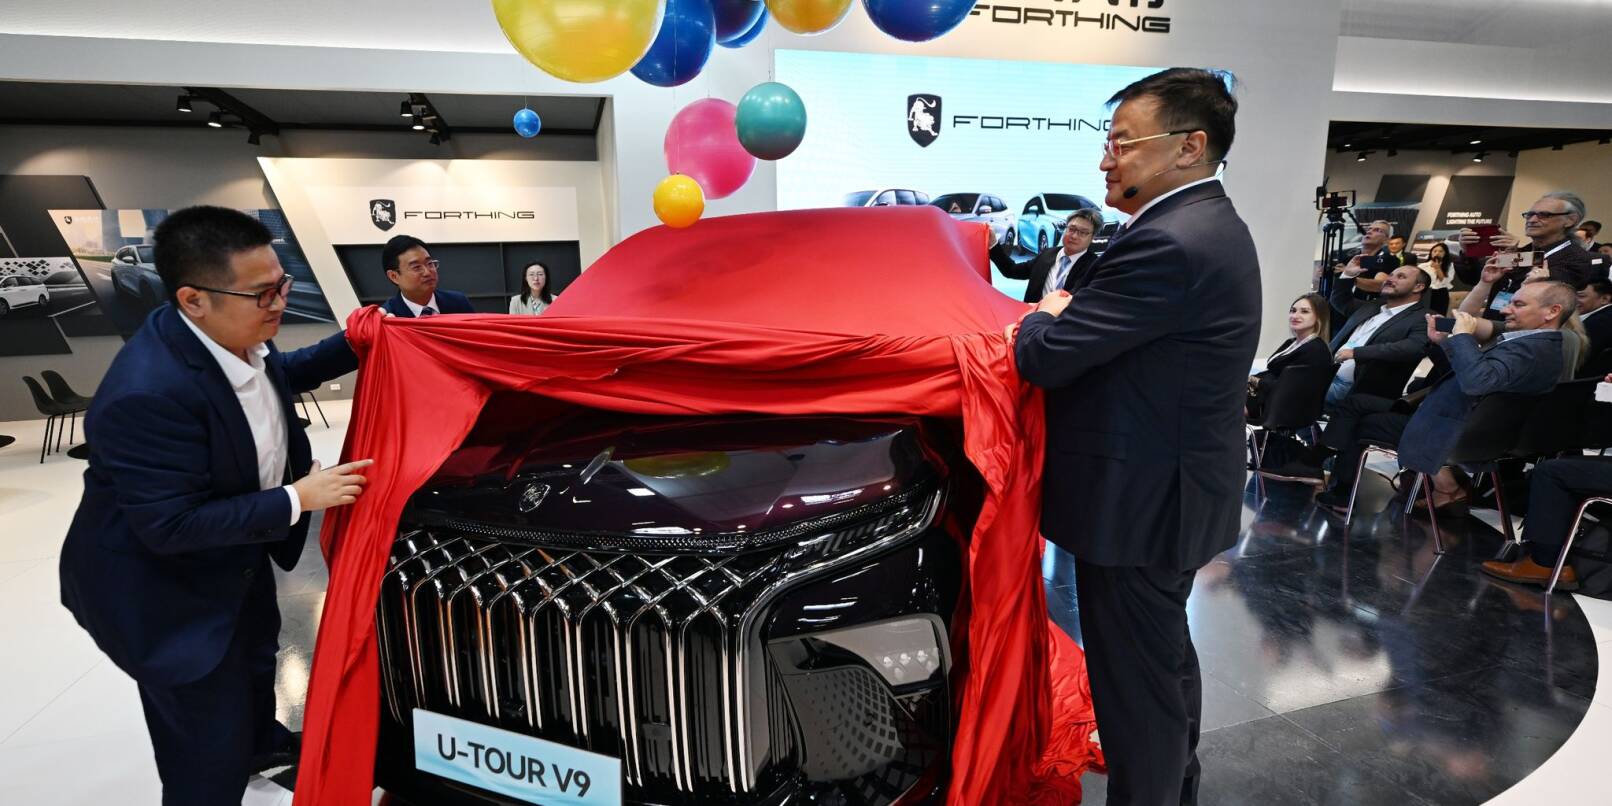 Manager der Dongfeng Liuzhou Motor Co. Ltd. enthüllen auf der IAA ein neues Fahrzeug der Marke Forthing.